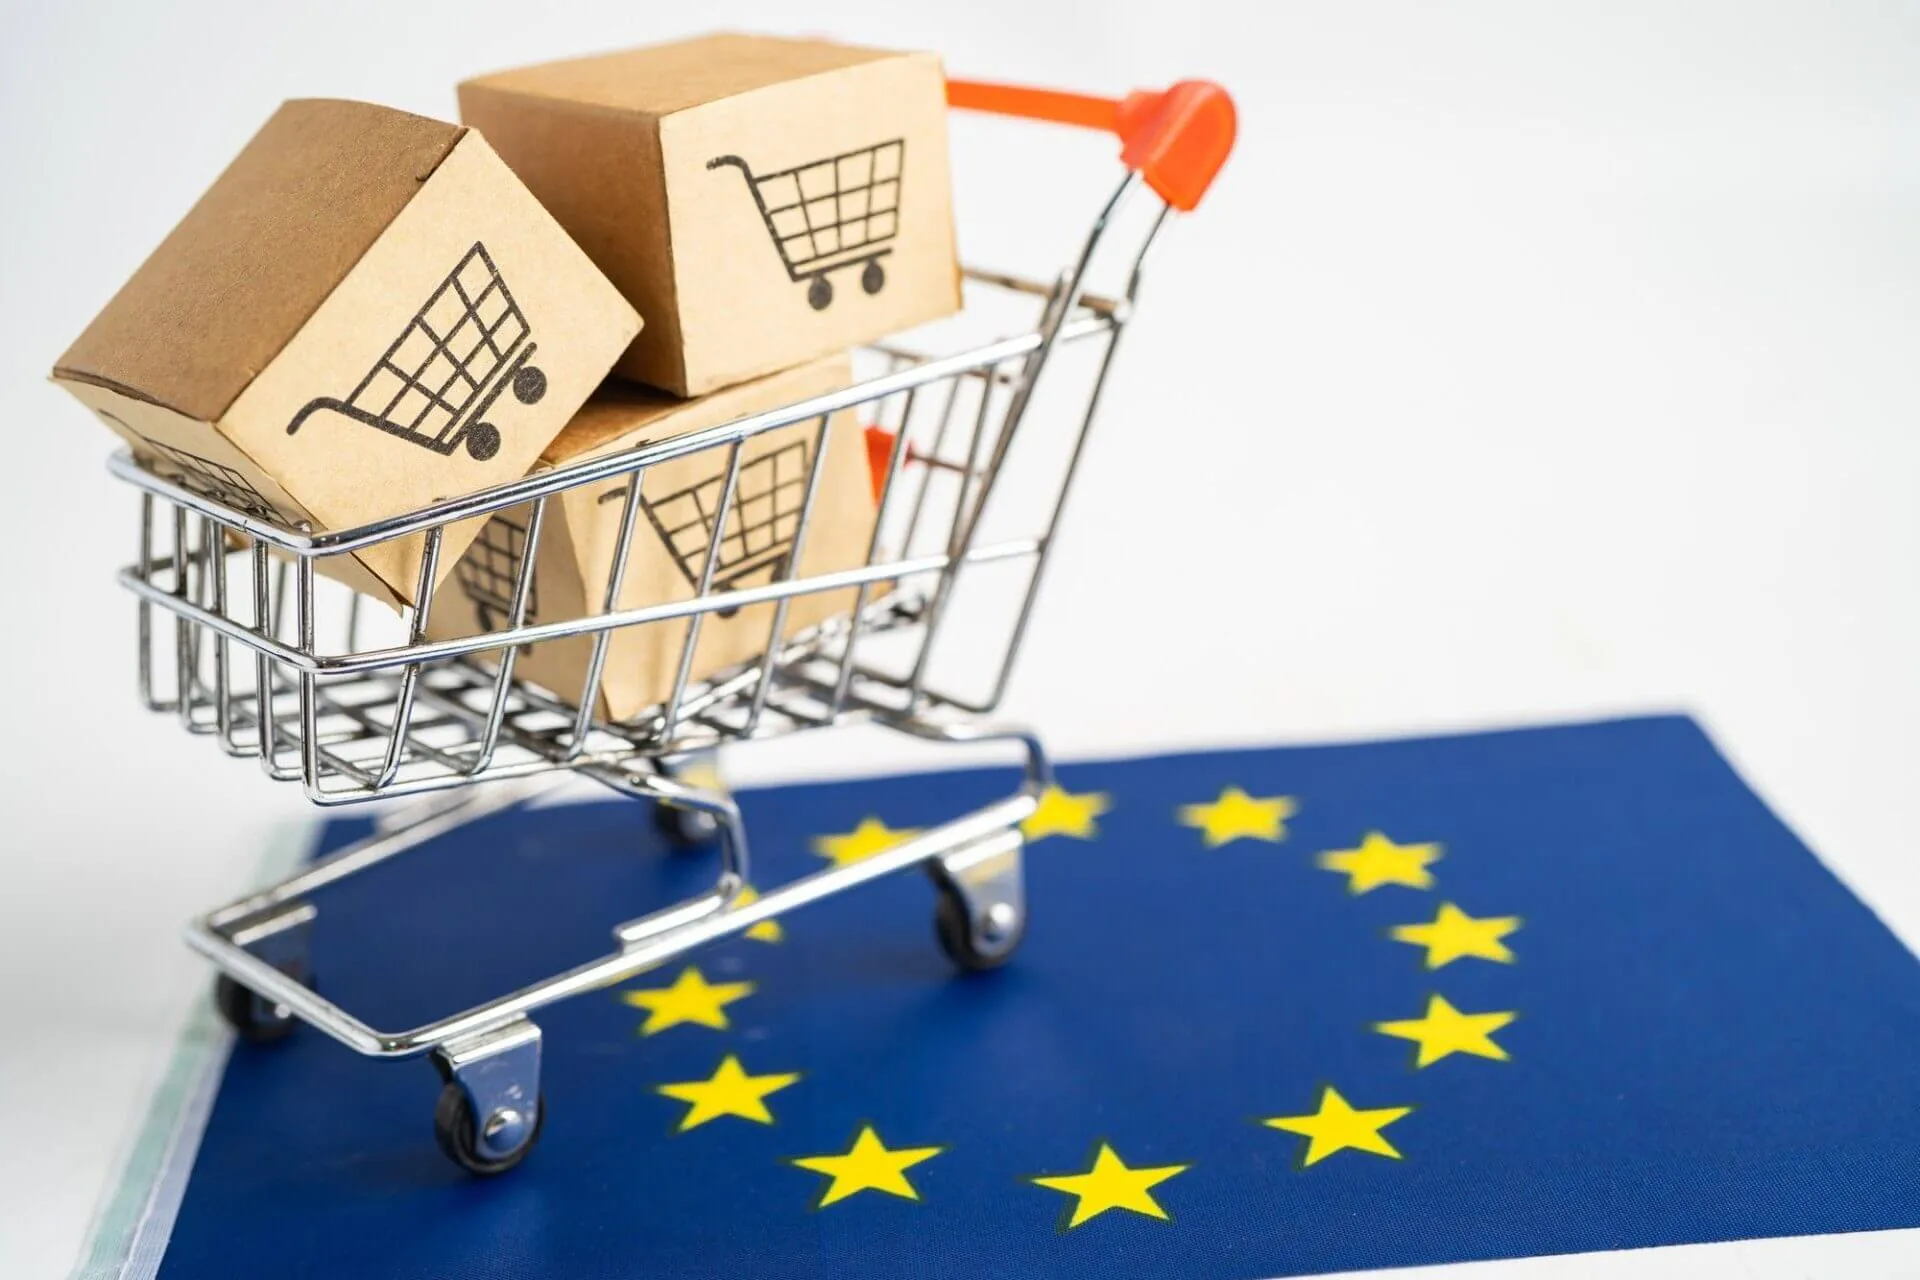 Miniatura de carrinho de supermercado sobre a bandeira da união europeia